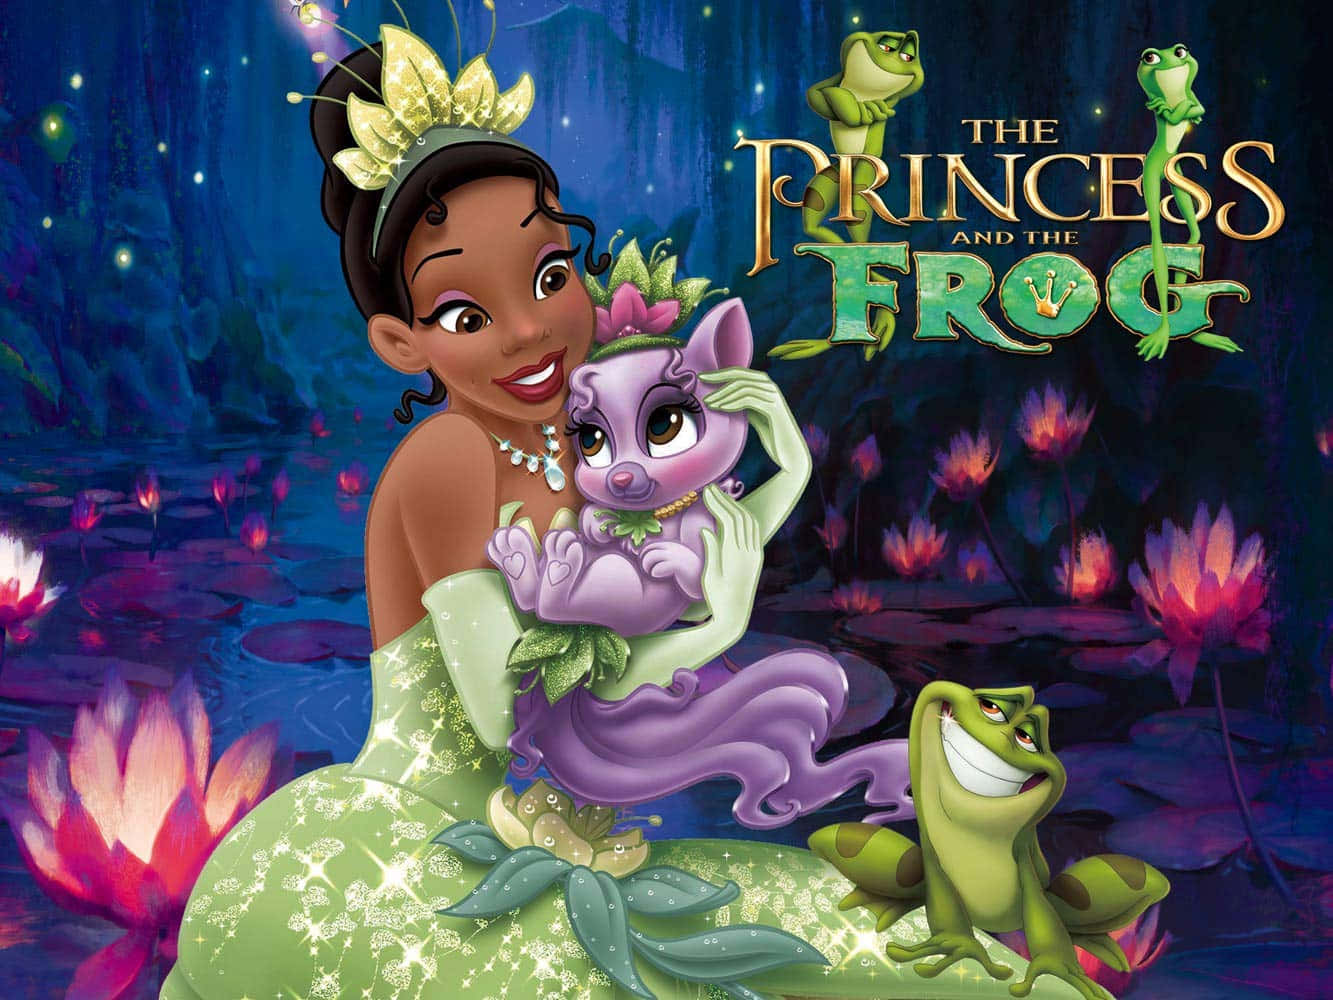 Princess Tiana and Prince Naveen of Disney's The Princess and the Frog